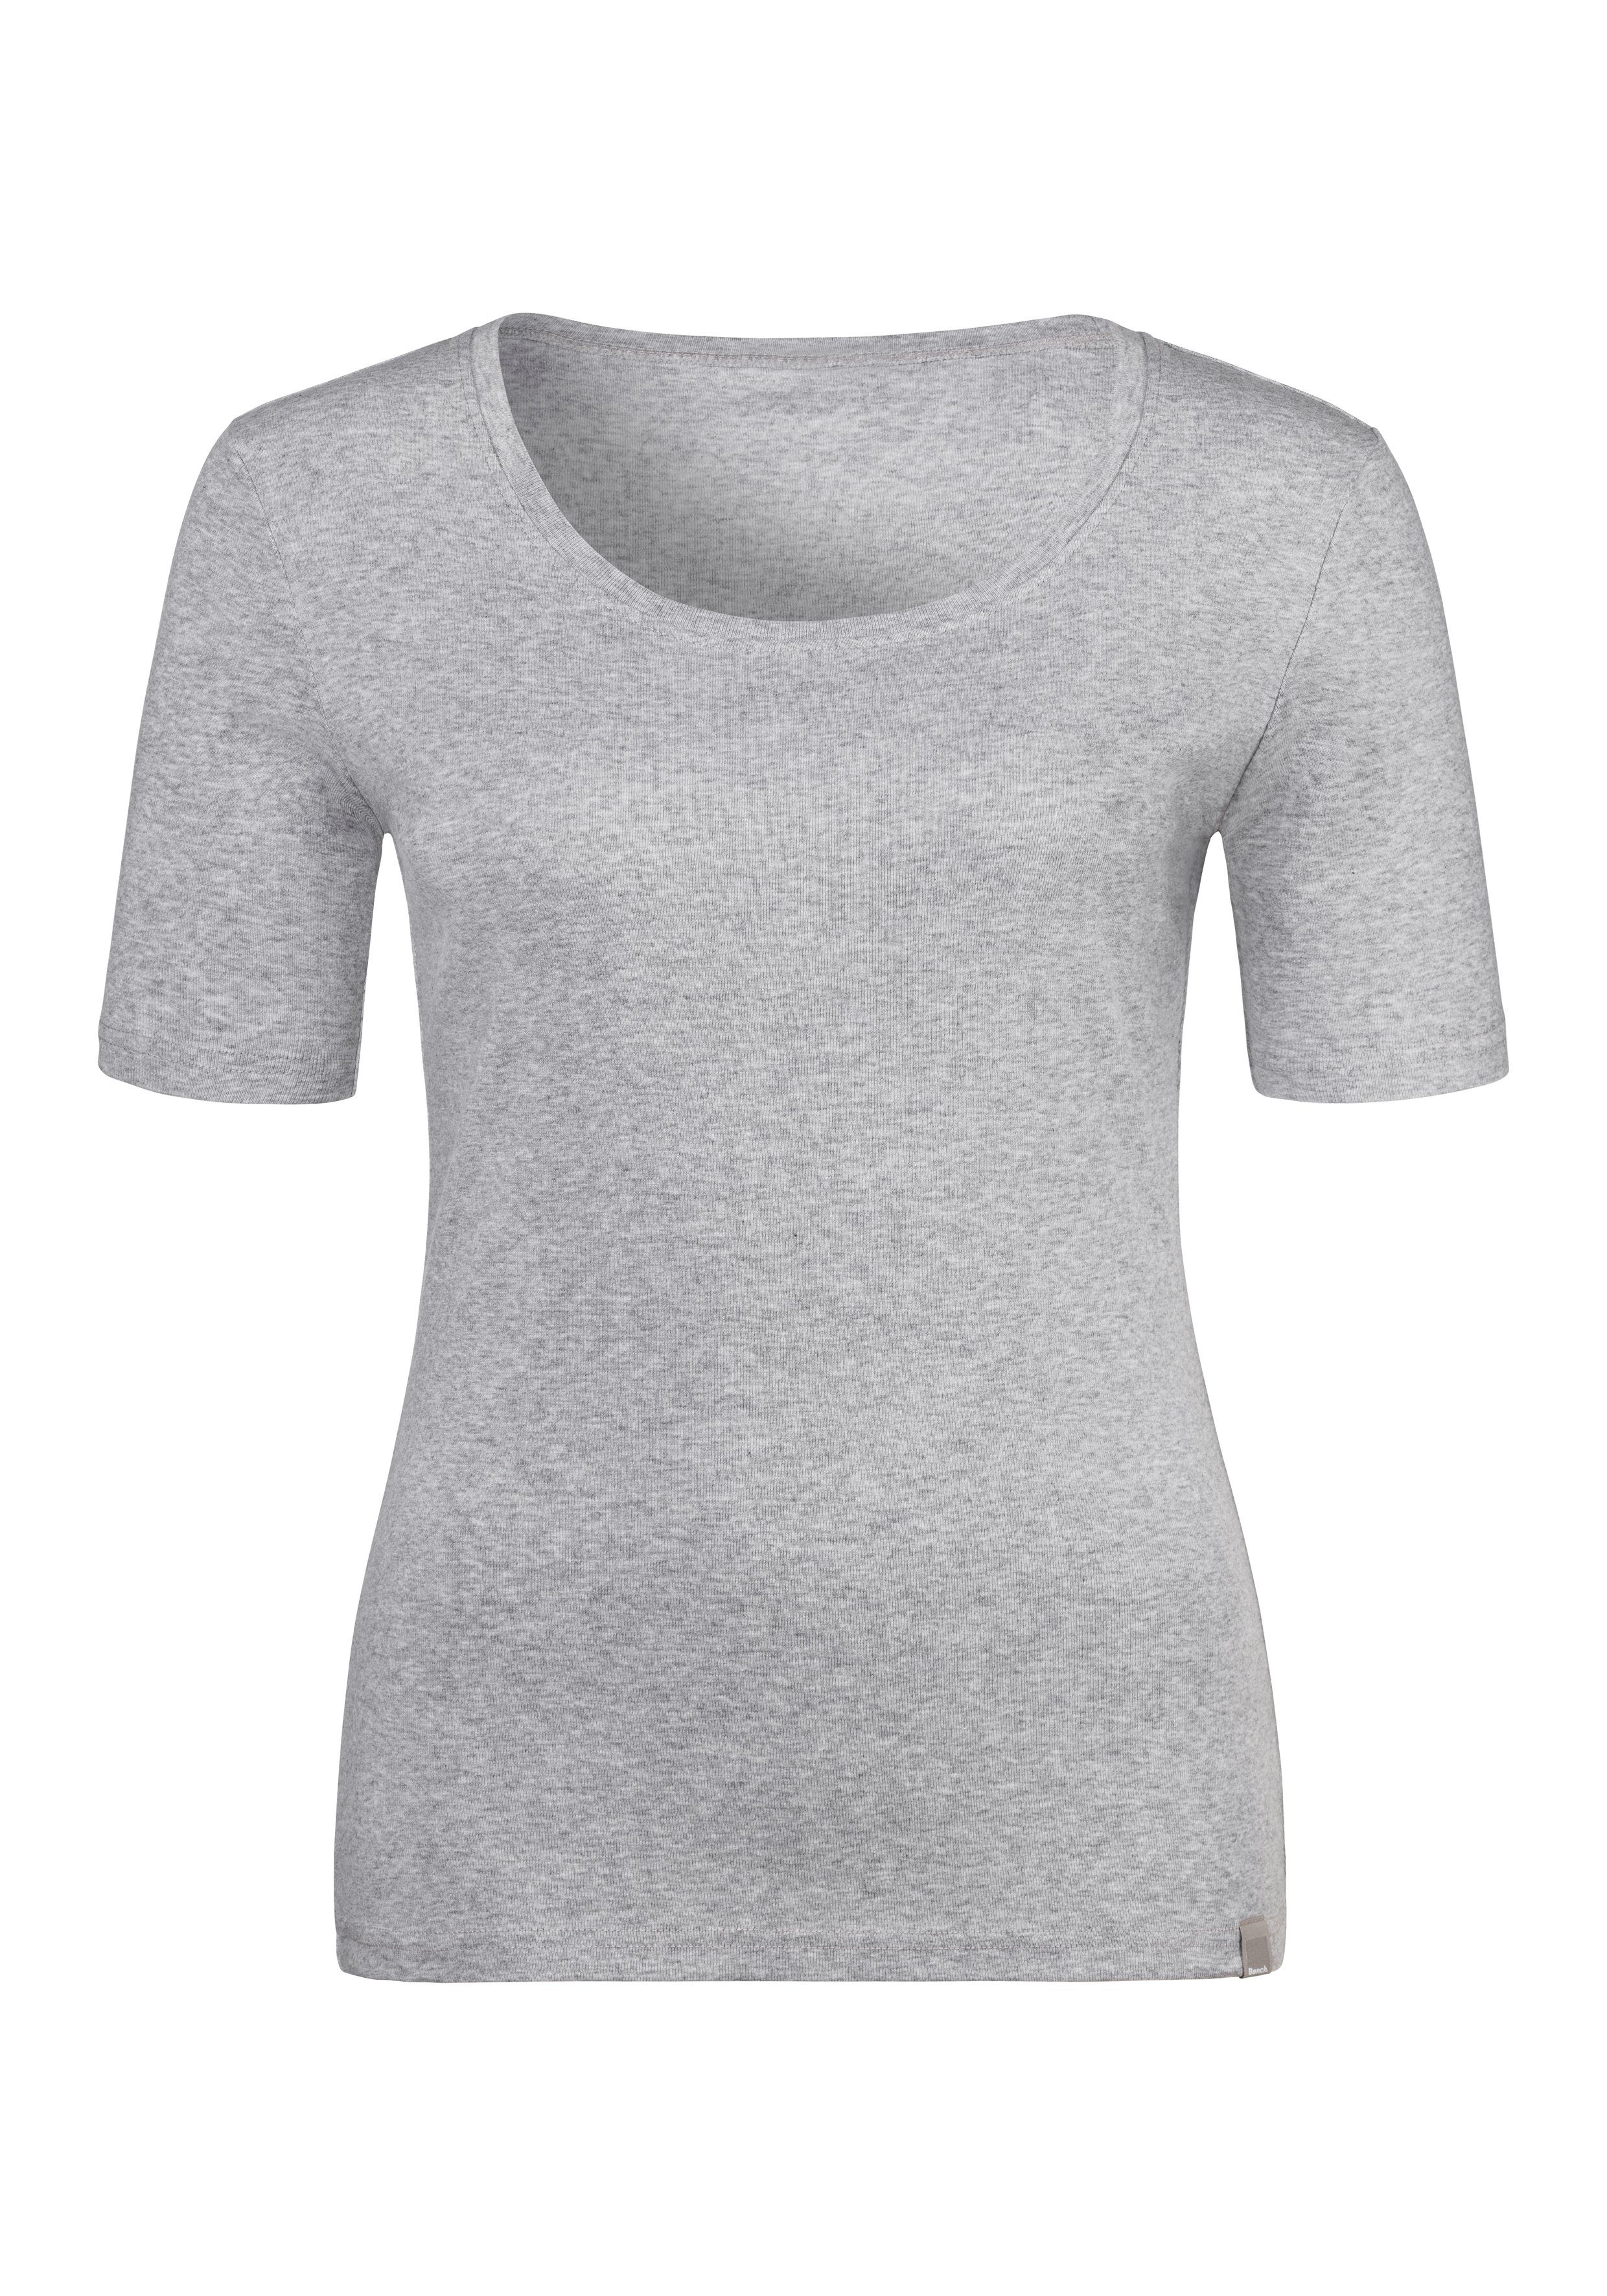 Bench. T-Shirt weicher (2er-Pack) aus Unterziehshirt grau-meliert schwarz, Feinripp-Qualität